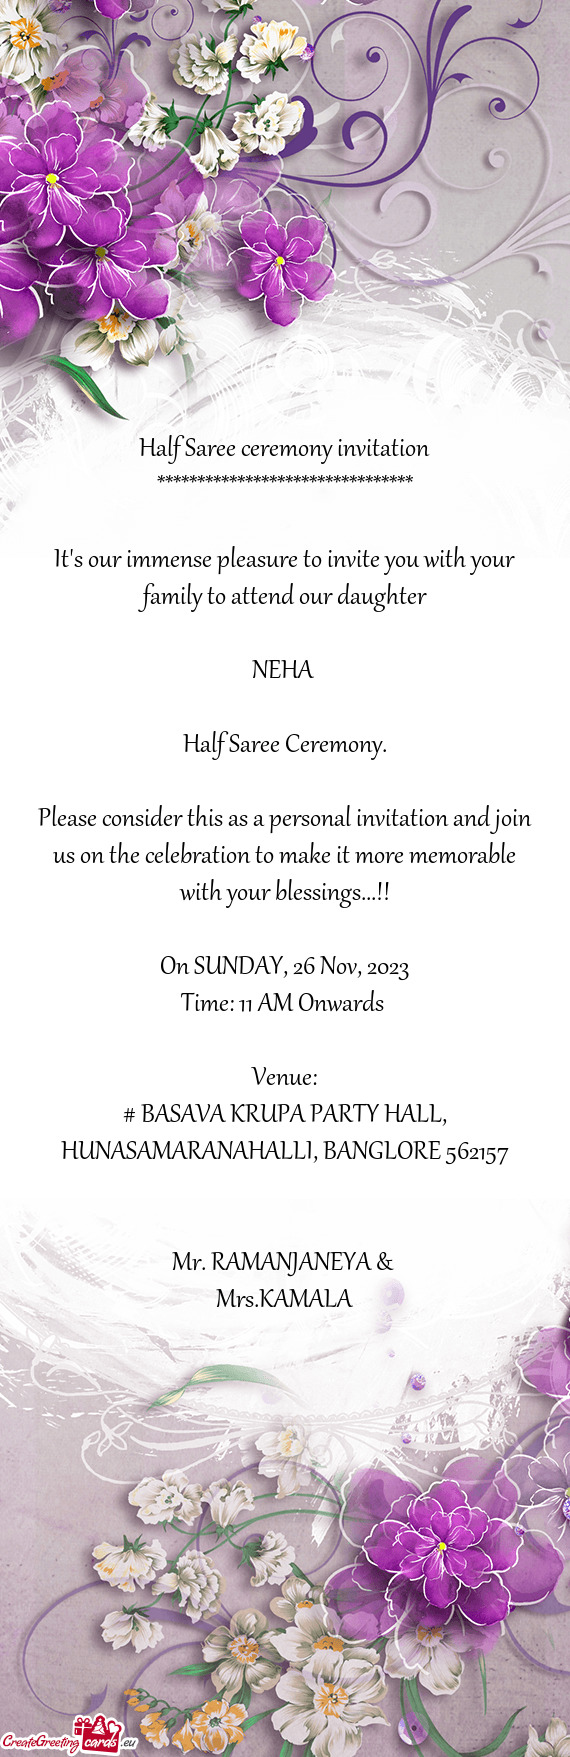 # BASAVA KRUPA PARTY HALL, HUNASAMARANAHALLI, BANGLORE 562157